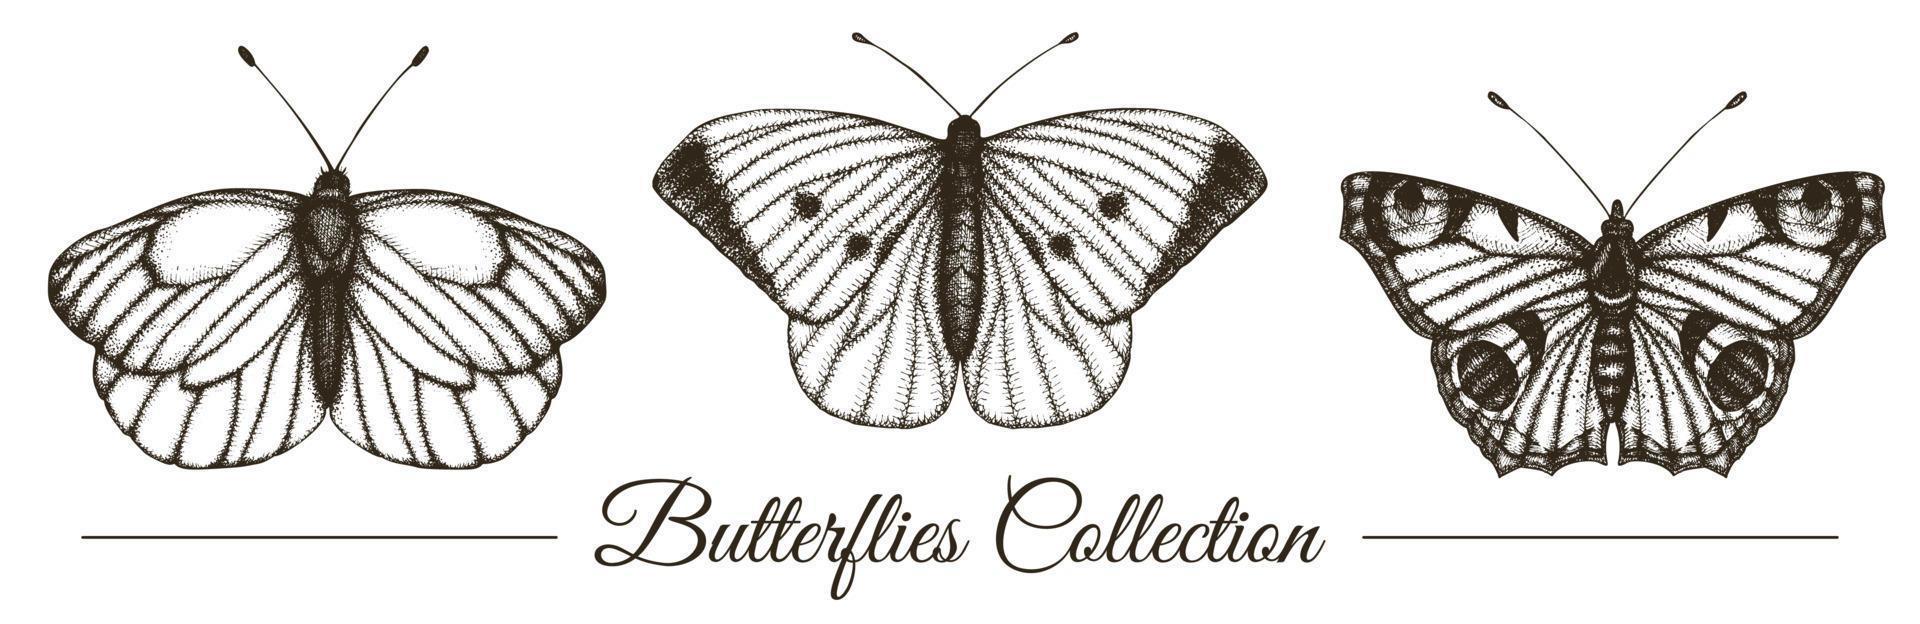 Vektor-Set von handgezeichneten schwarzen und weißen Schmetterlingen. Gravur Retro-Illustration. realistische Insekten auf weißem Hintergrund. detaillierte grafische Zeichnung im Vintage-Stil vektor